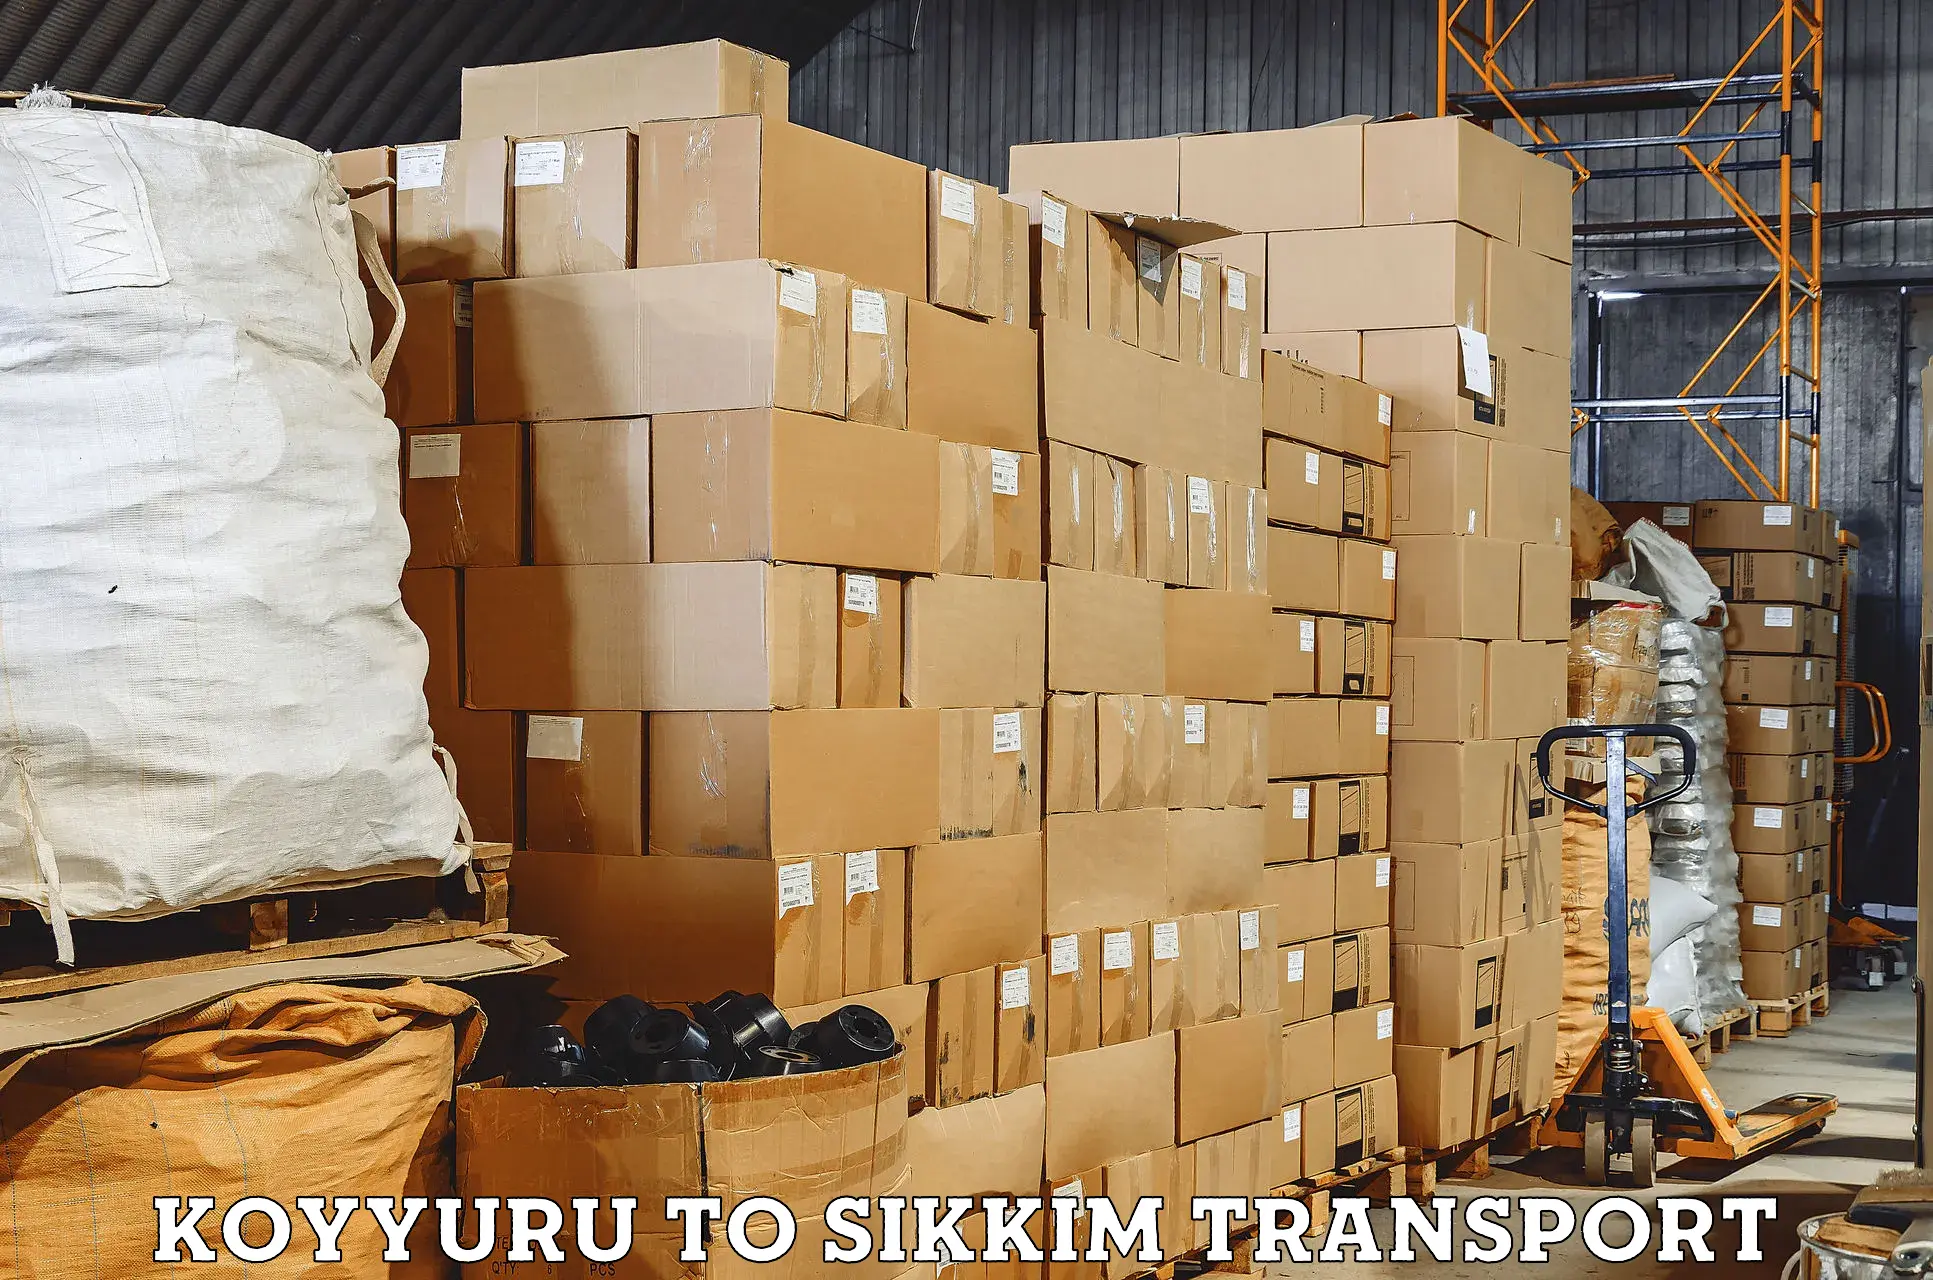 Transport in sharing Koyyuru to Mangan